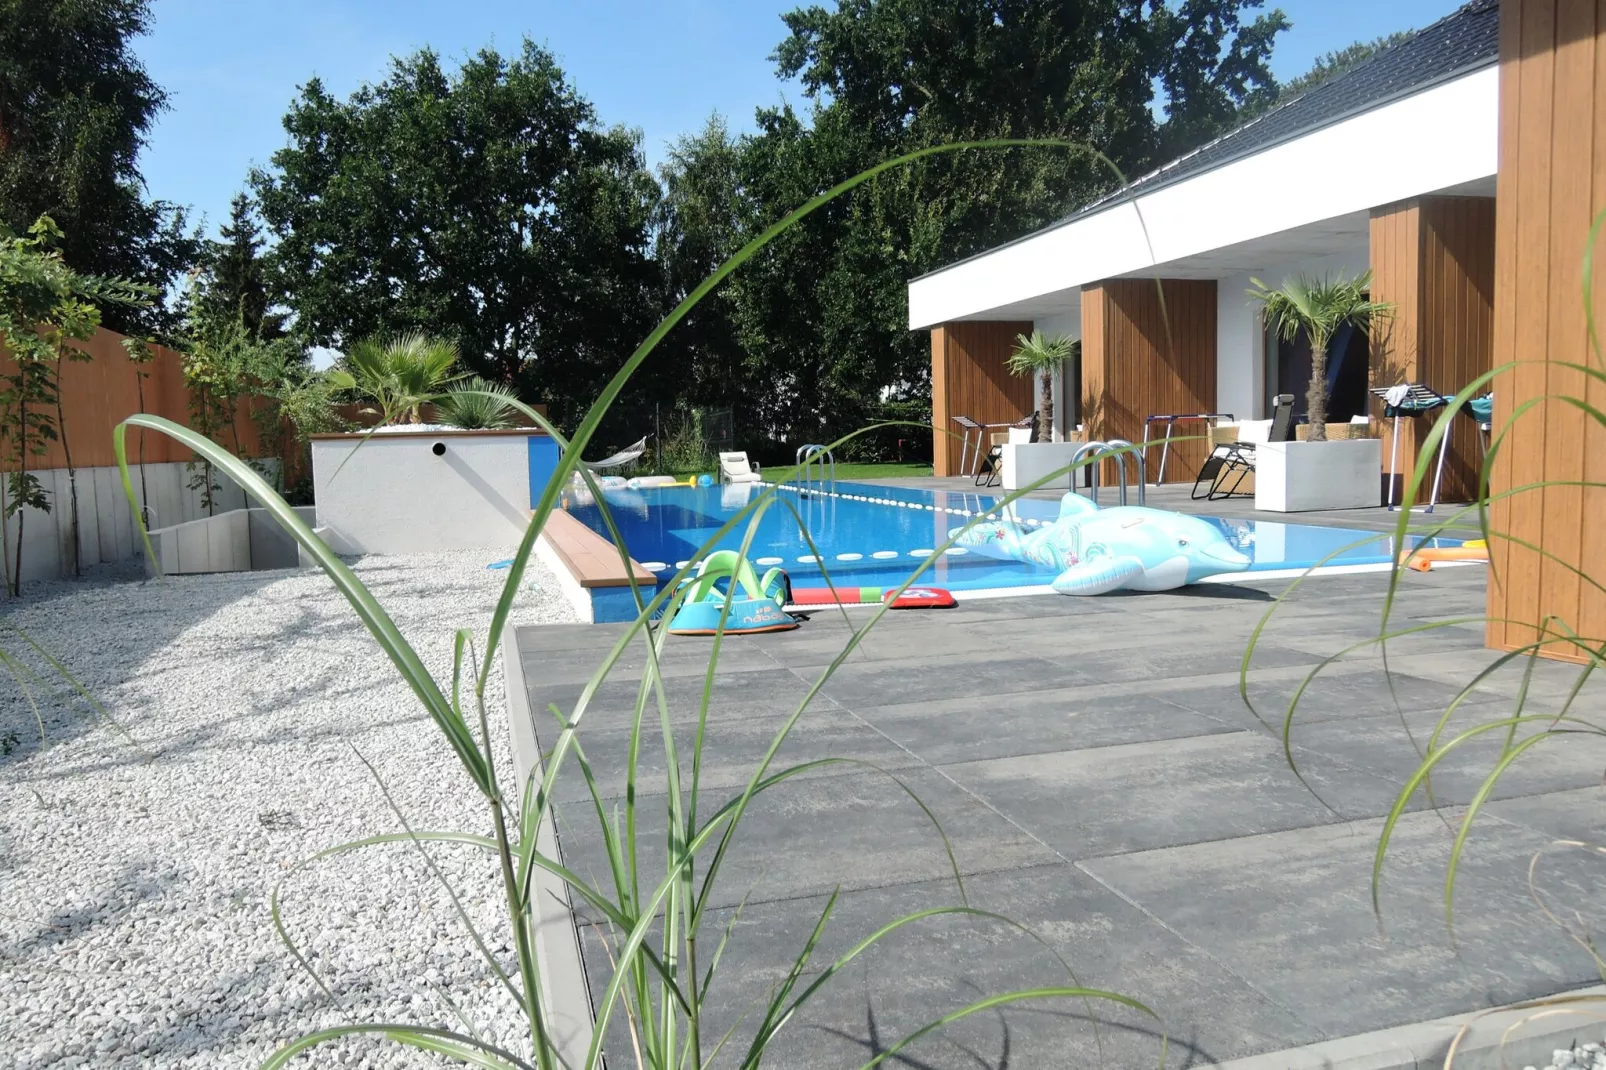 Dom z prywatym basenem i sauną  w Swinoujsciu dla 14 osób-Zwembad